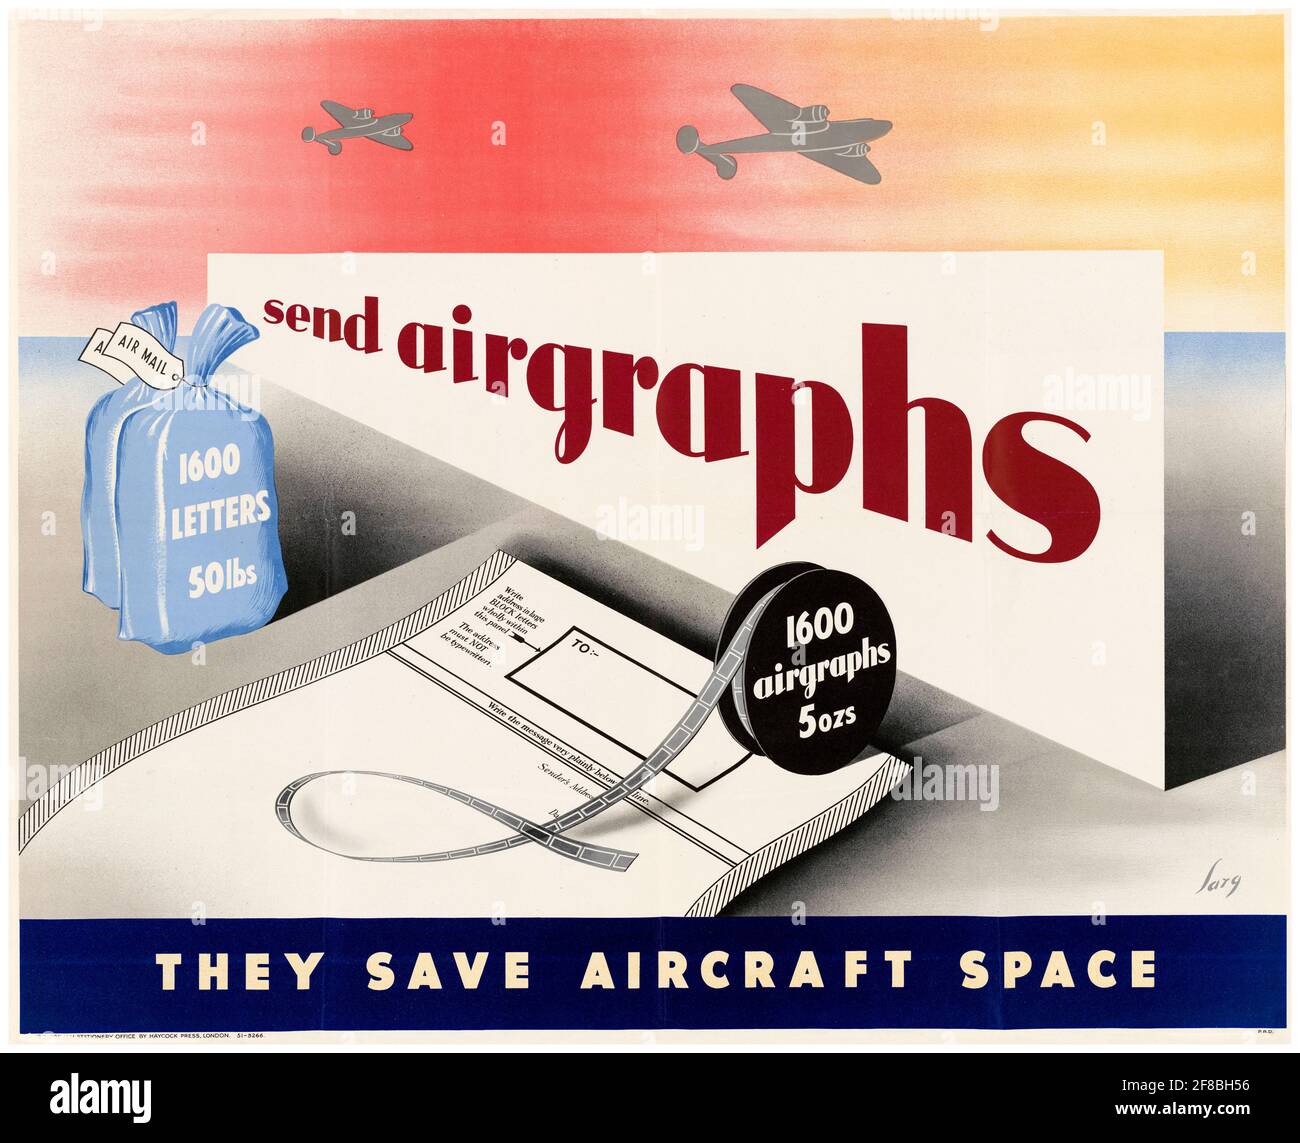 British, cartel de información pública de WW2, Enviar Airgraphs: Ellos ahorran espacio aéreo, 1942-1945 Foto de stock